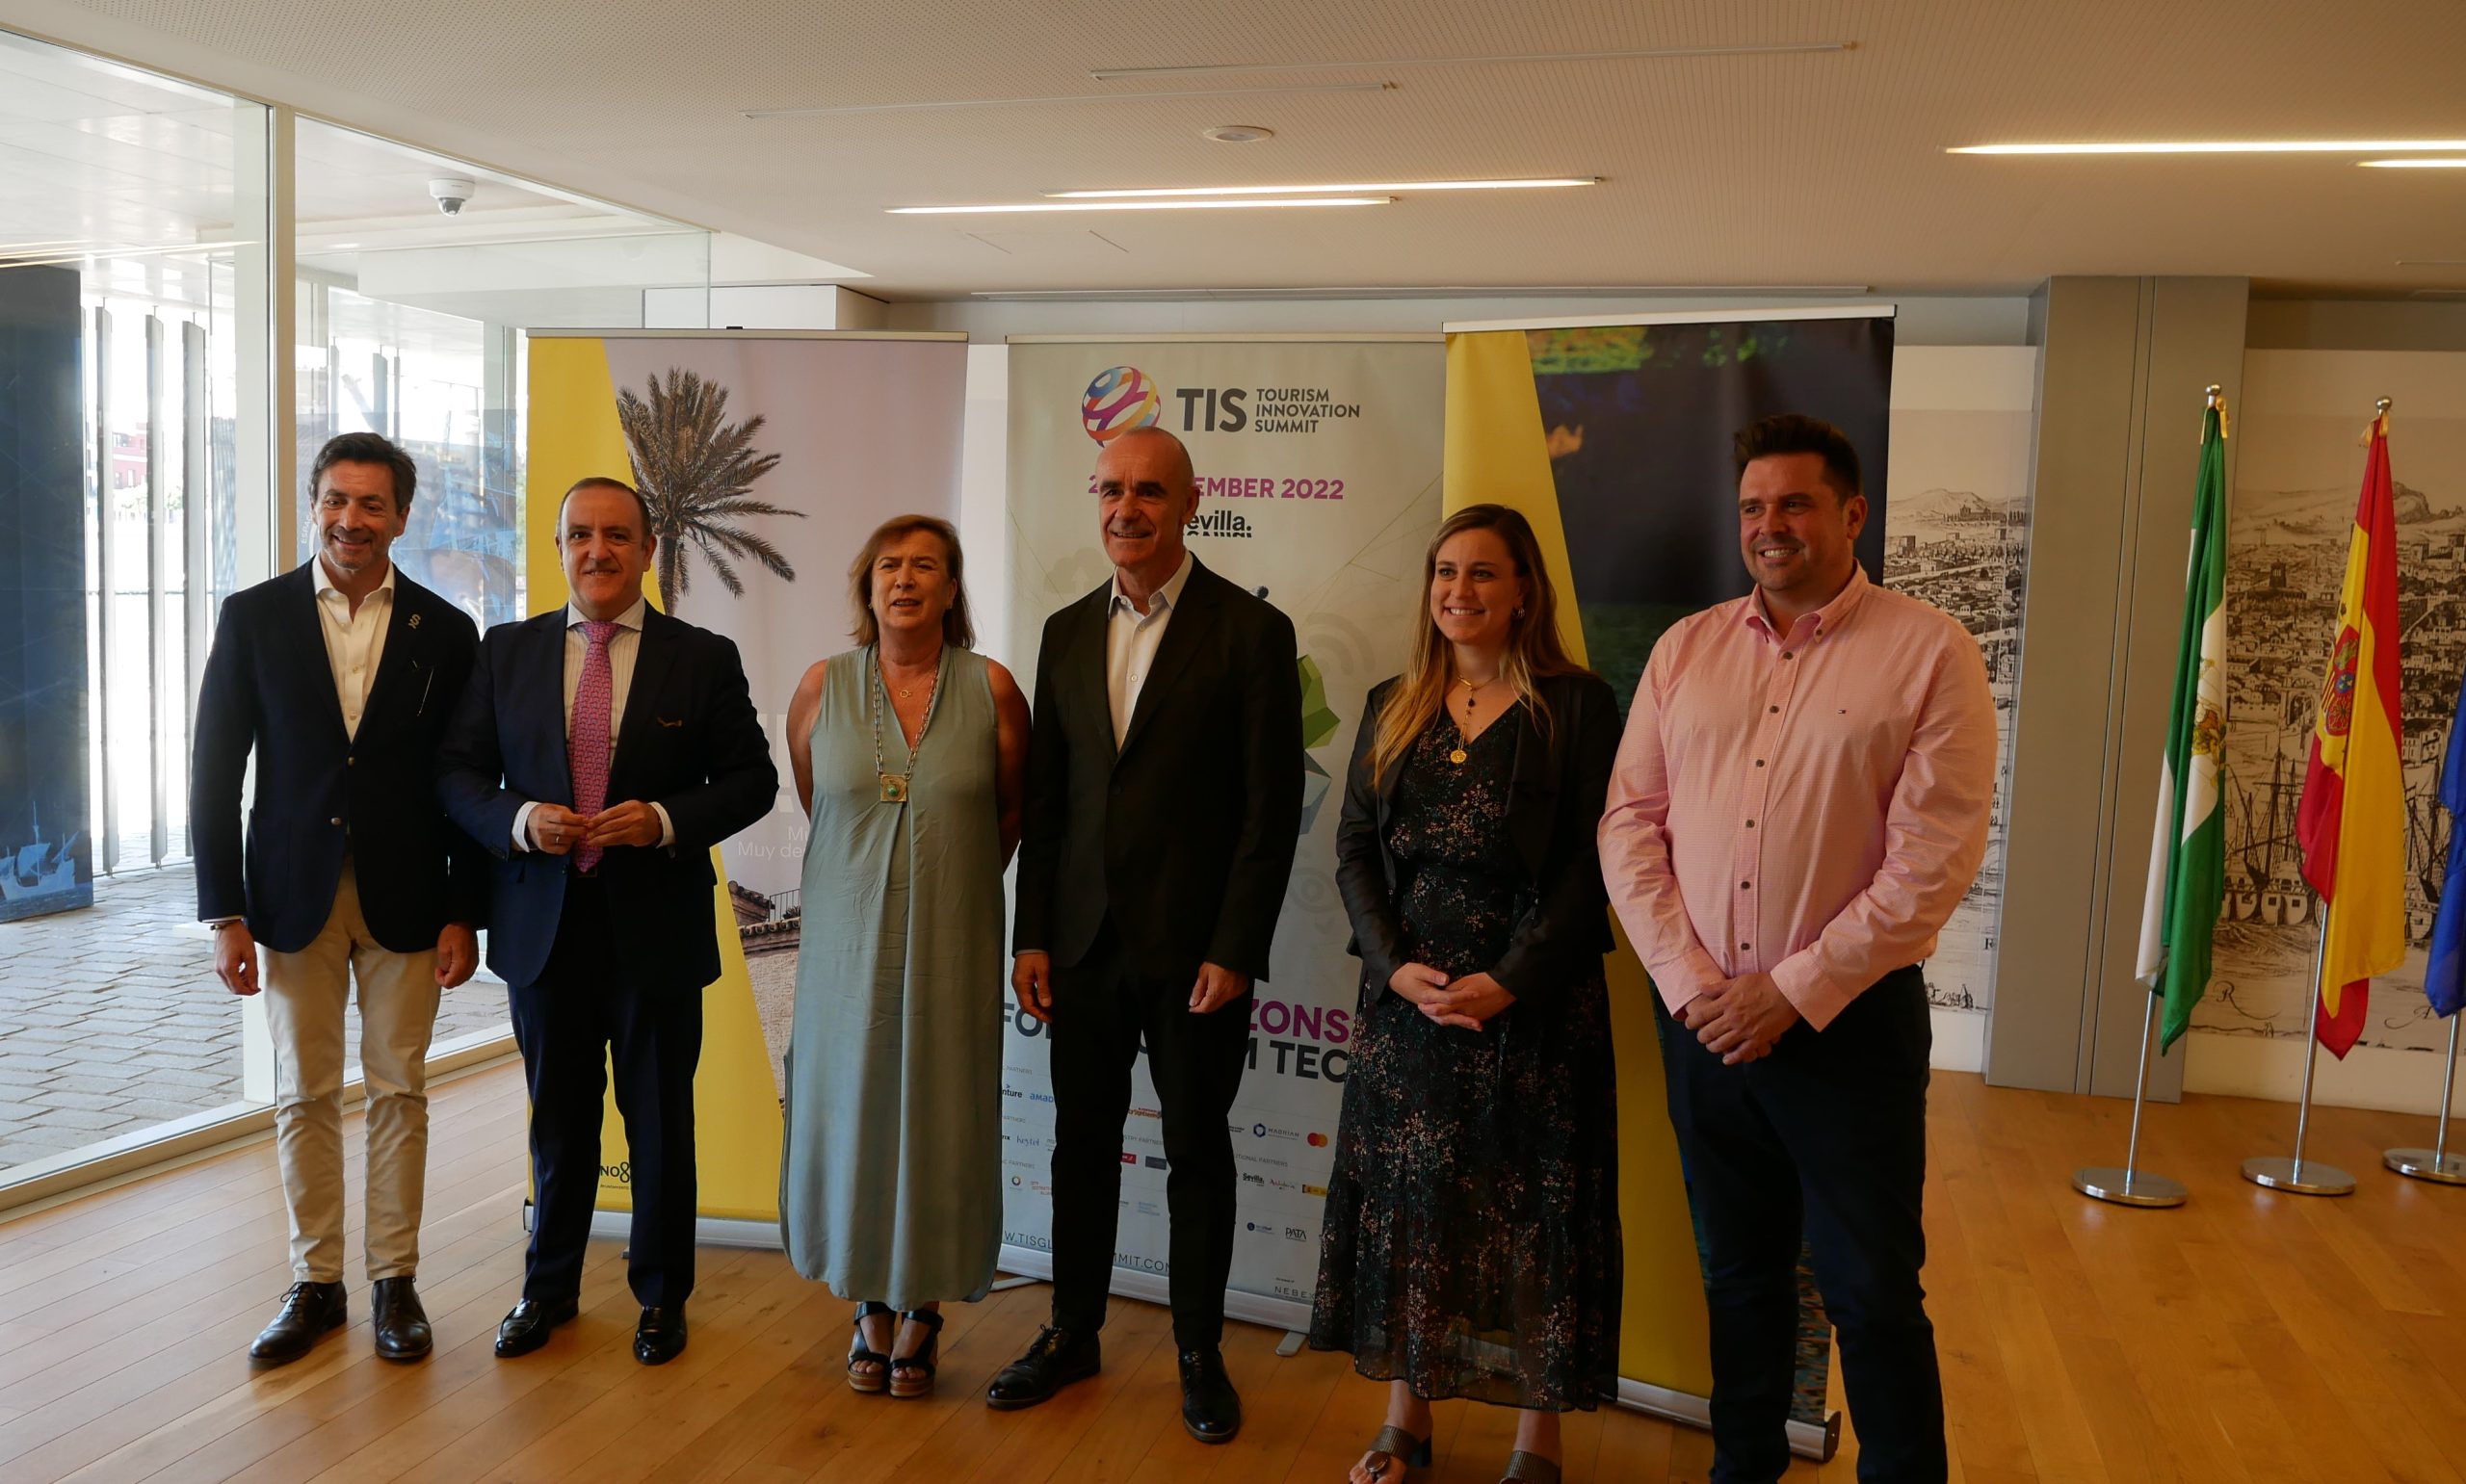 Sevilla anuncia que abrirá las actividades turísticas al ciudadano con motivo de la celebración del TIS2022